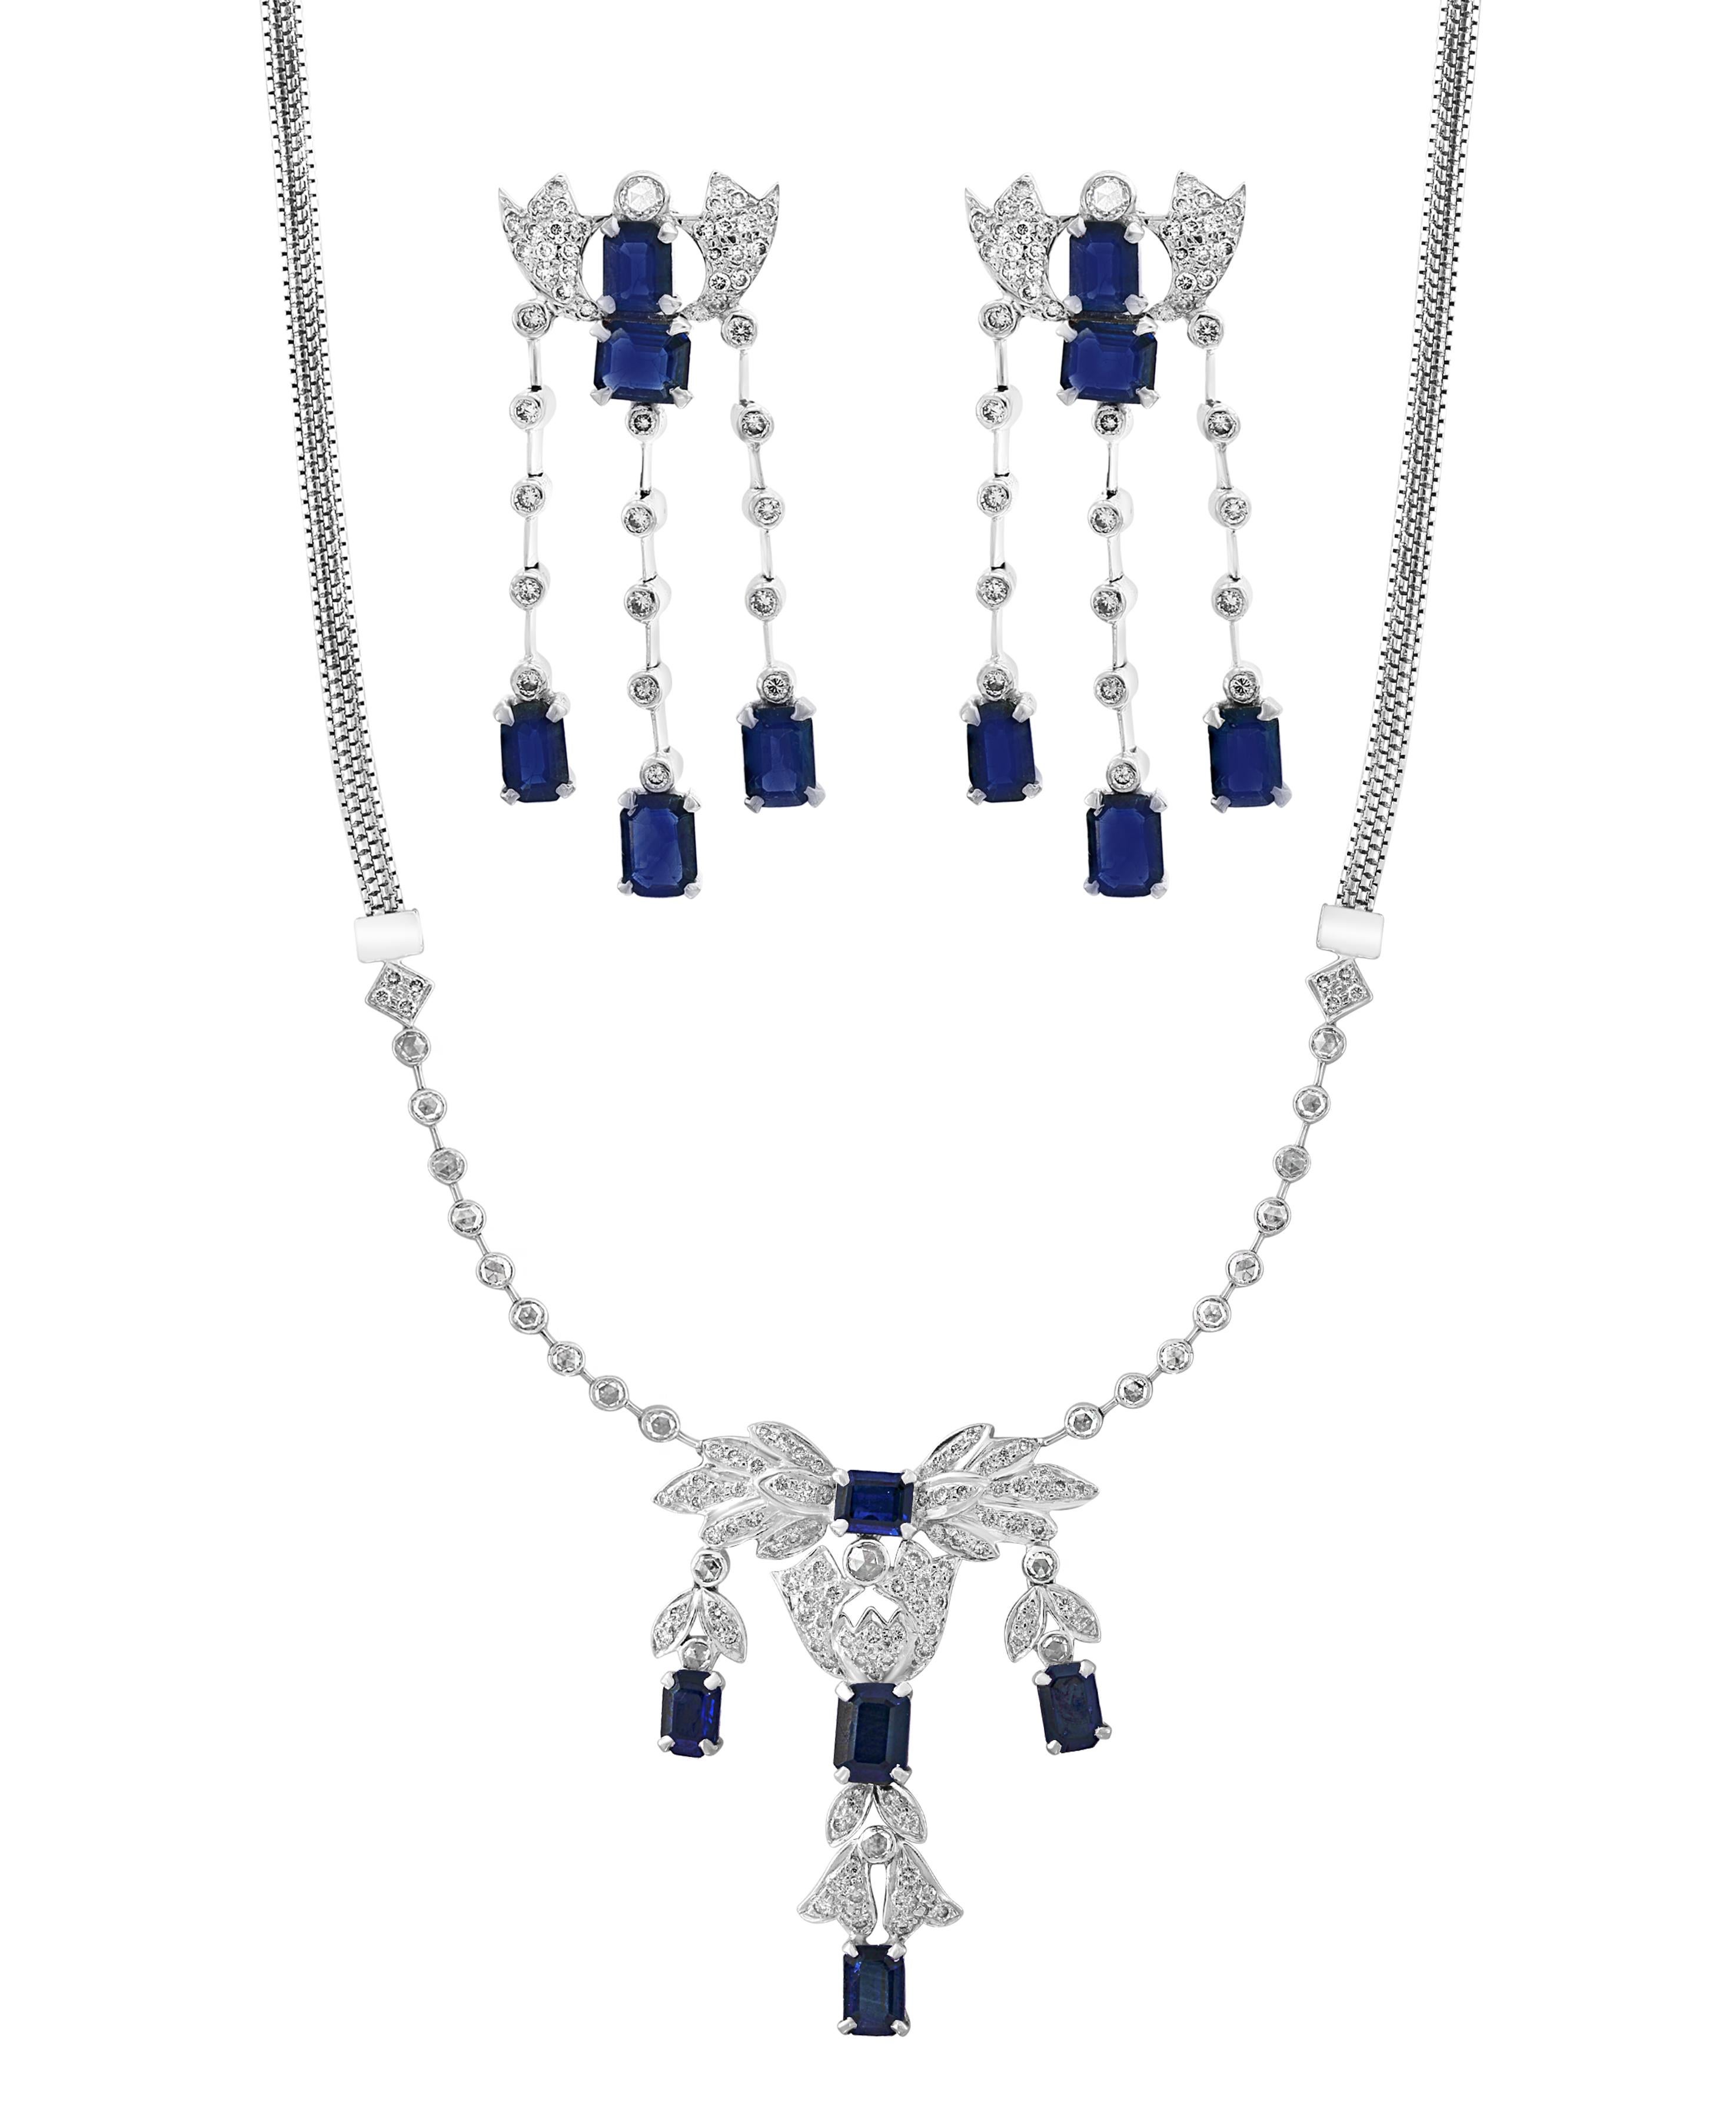 AGI Natural Blue Sapphire & Diamond Necklace 18 Karat White Gold, Suite, Estate For Sale 3